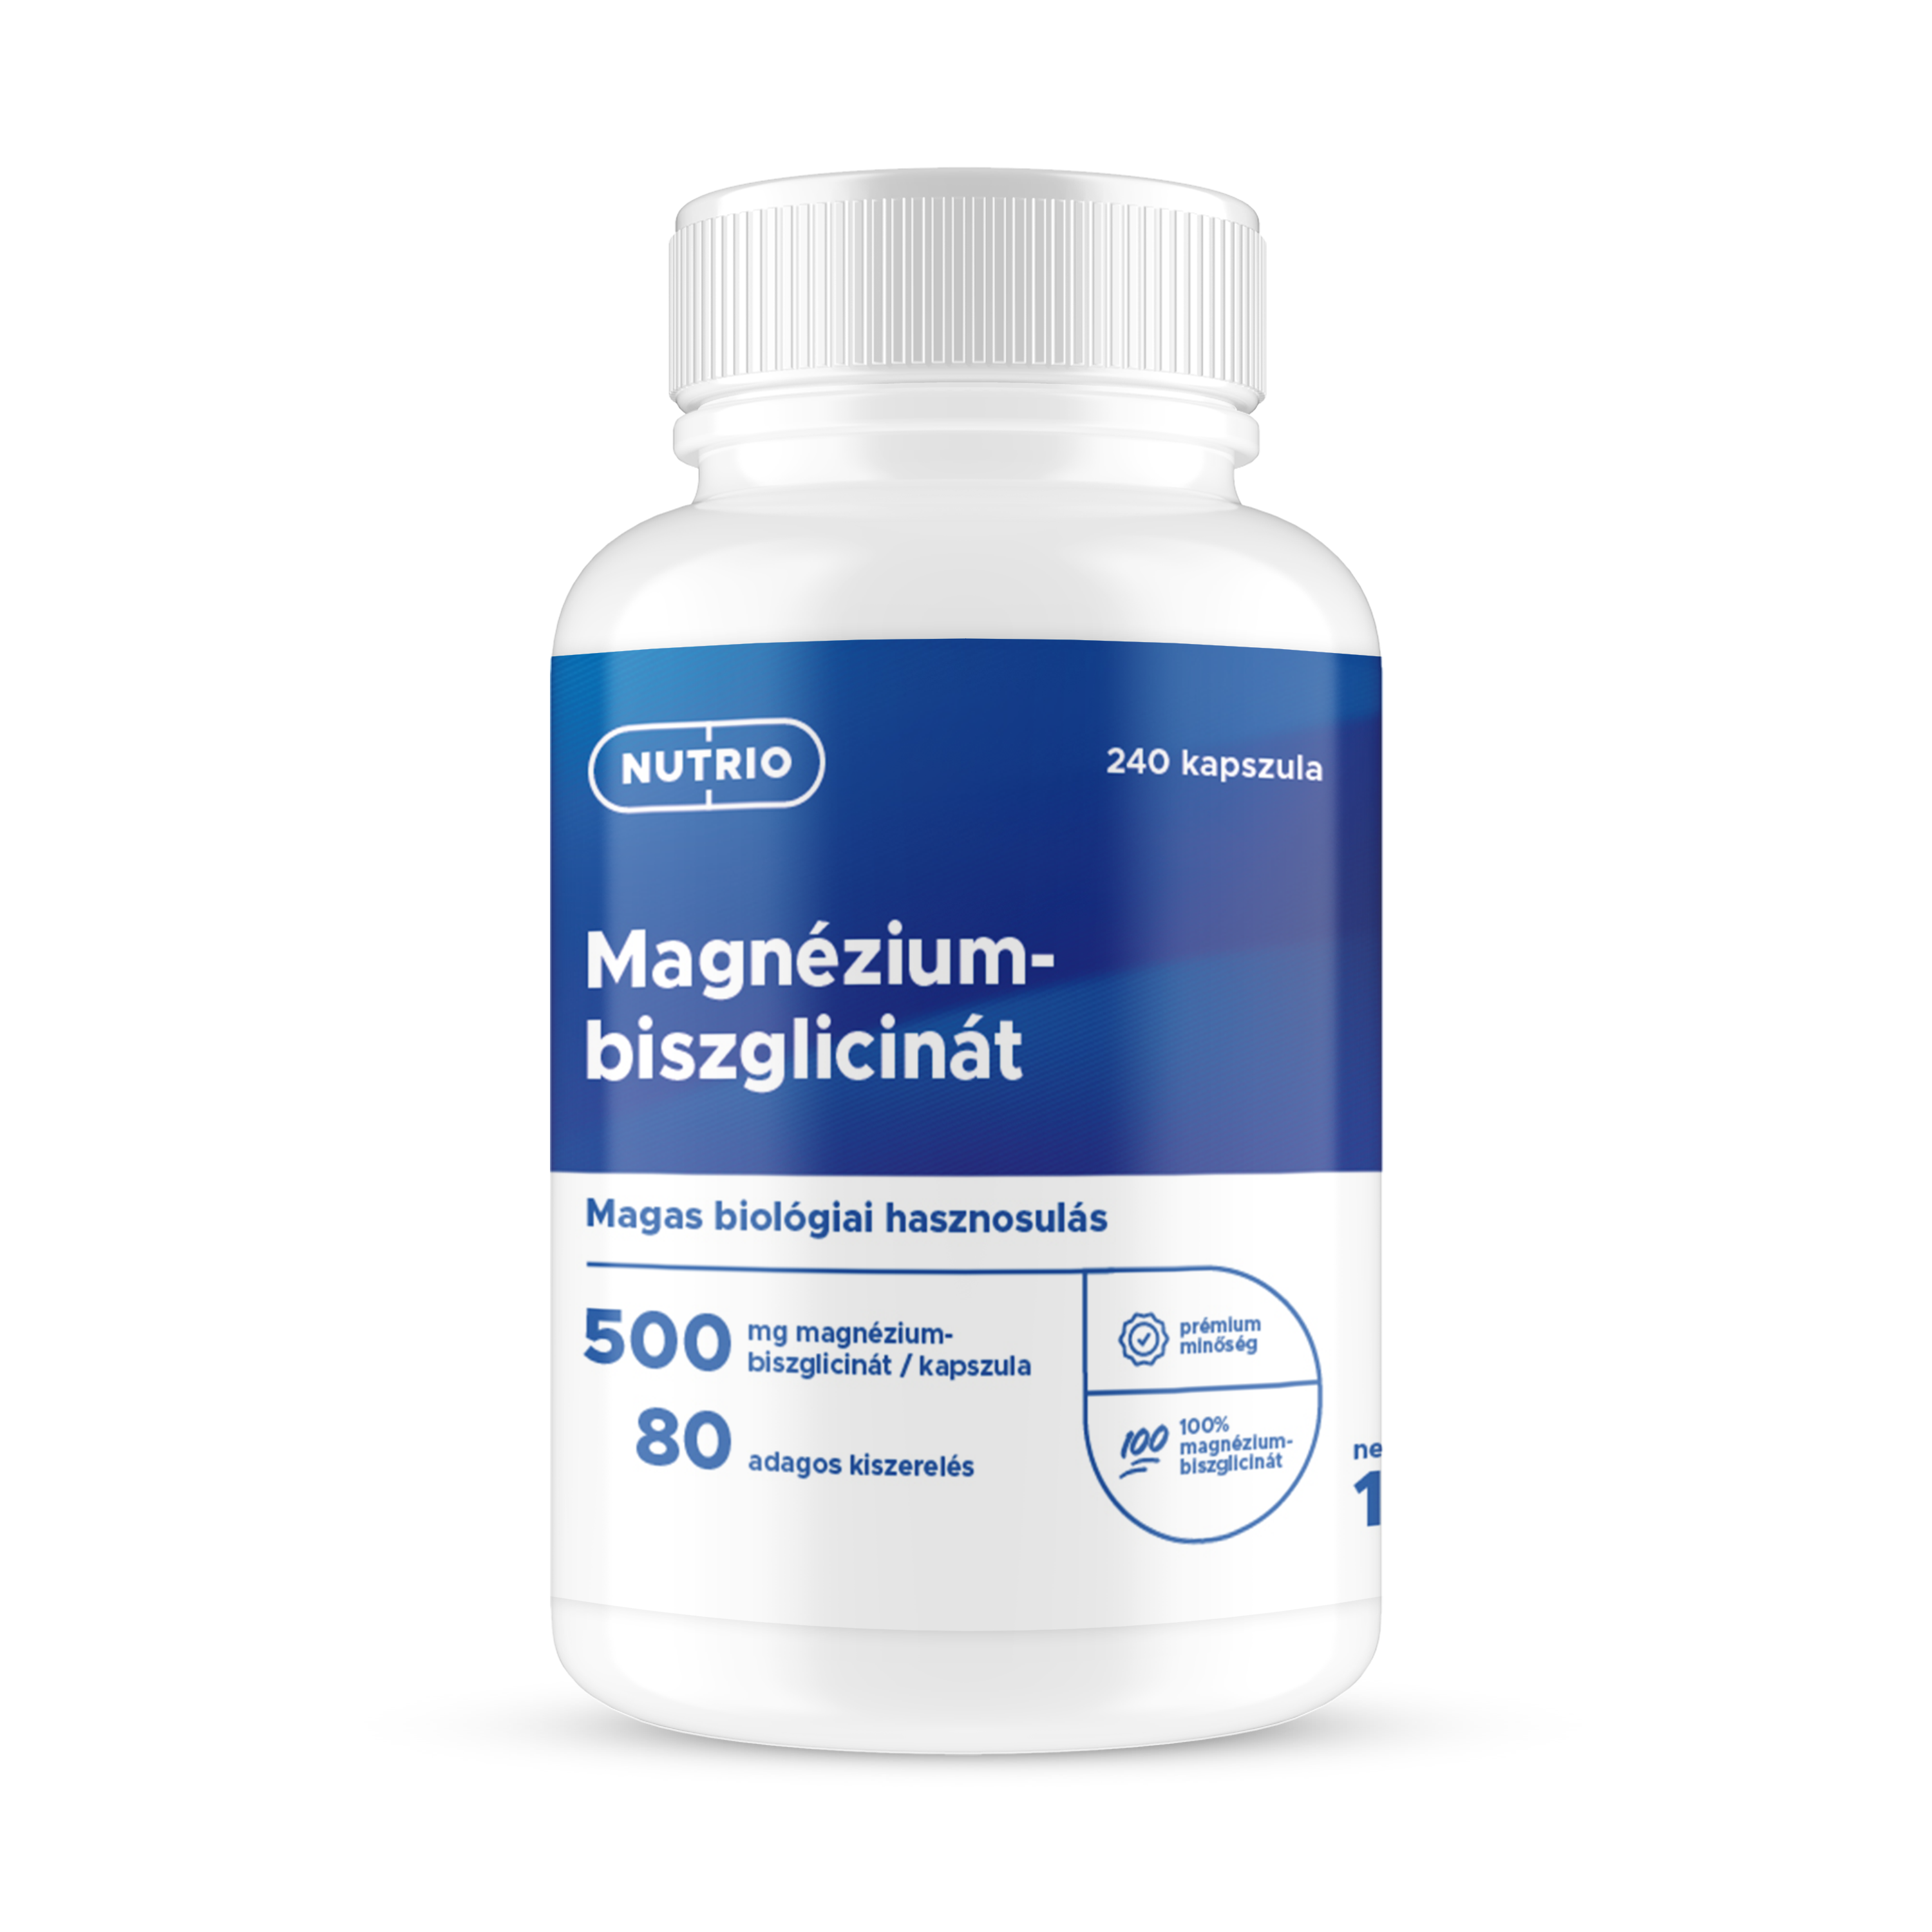 Magnézium-biszglicinát kapszula